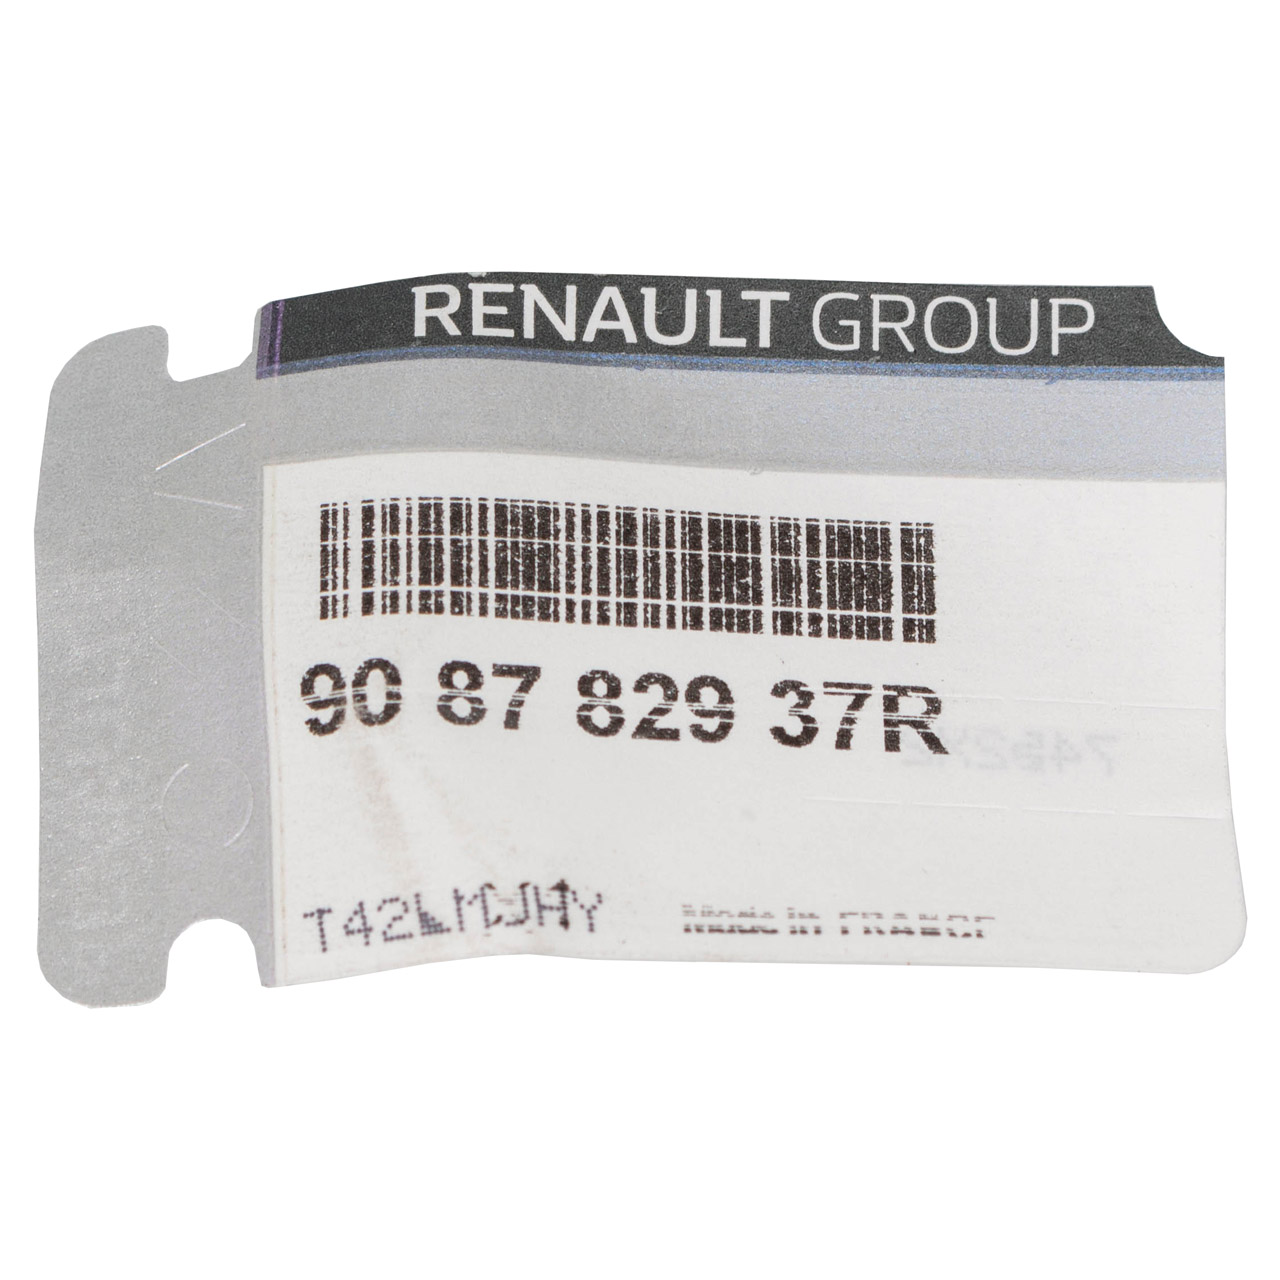 ORIGINAL Renault Anschlagpuffer für Türen Motorhauben Twizy MAM_ 908782937R